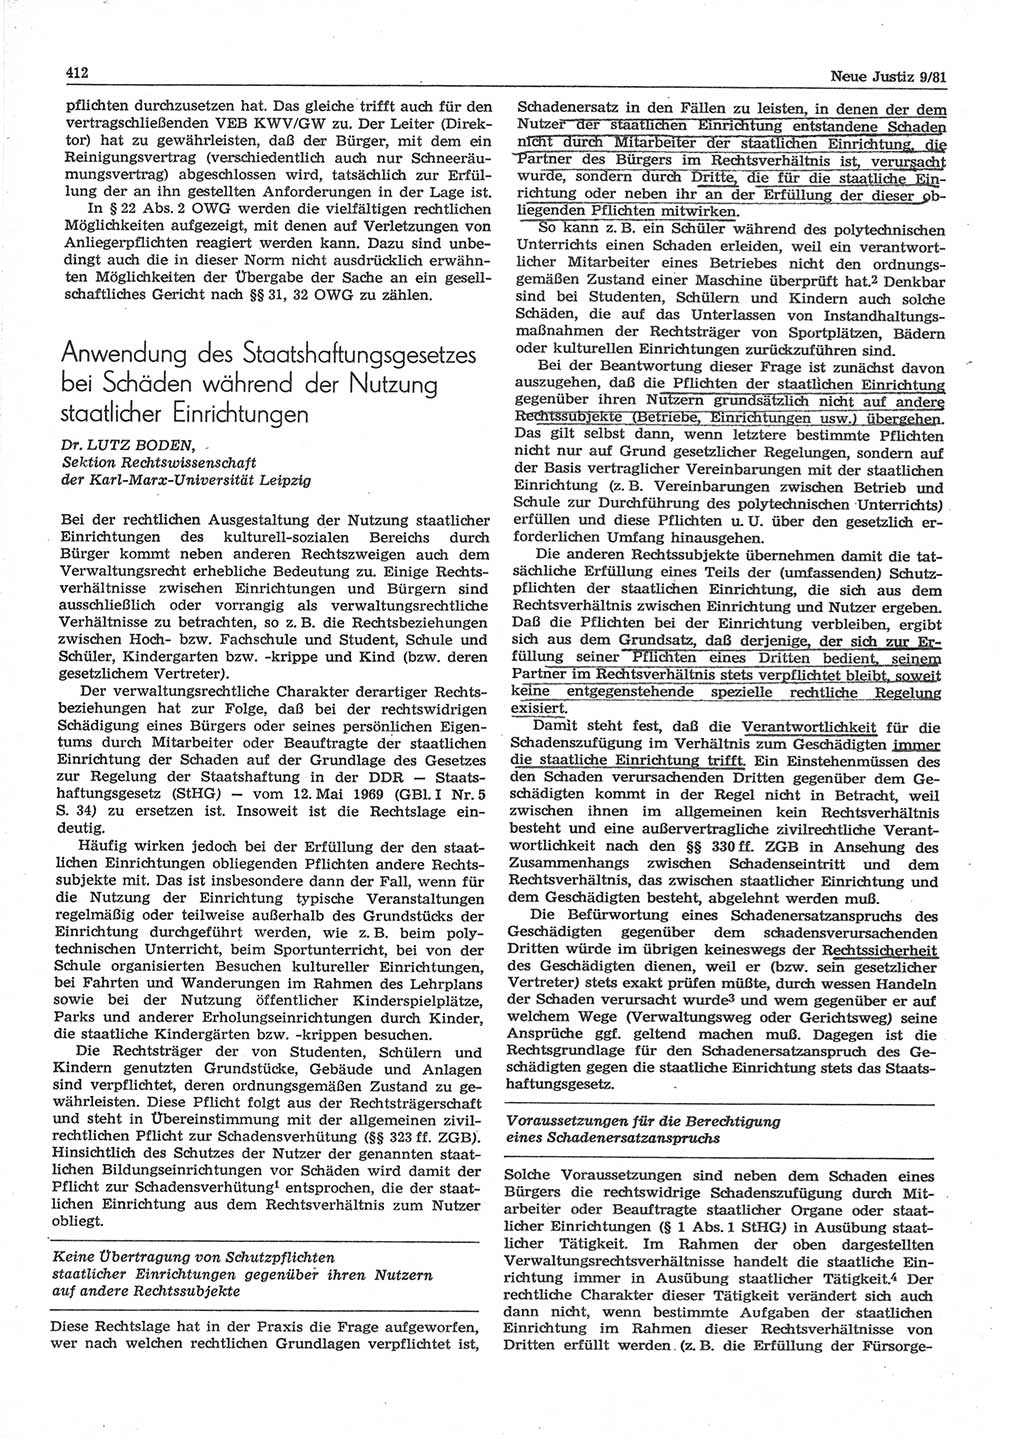 Neue Justiz (NJ), Zeitschrift für sozialistisches Recht und Gesetzlichkeit [Deutsche Demokratische Republik (DDR)], 35. Jahrgang 1981, Seite 412 (NJ DDR 1981, S. 412)